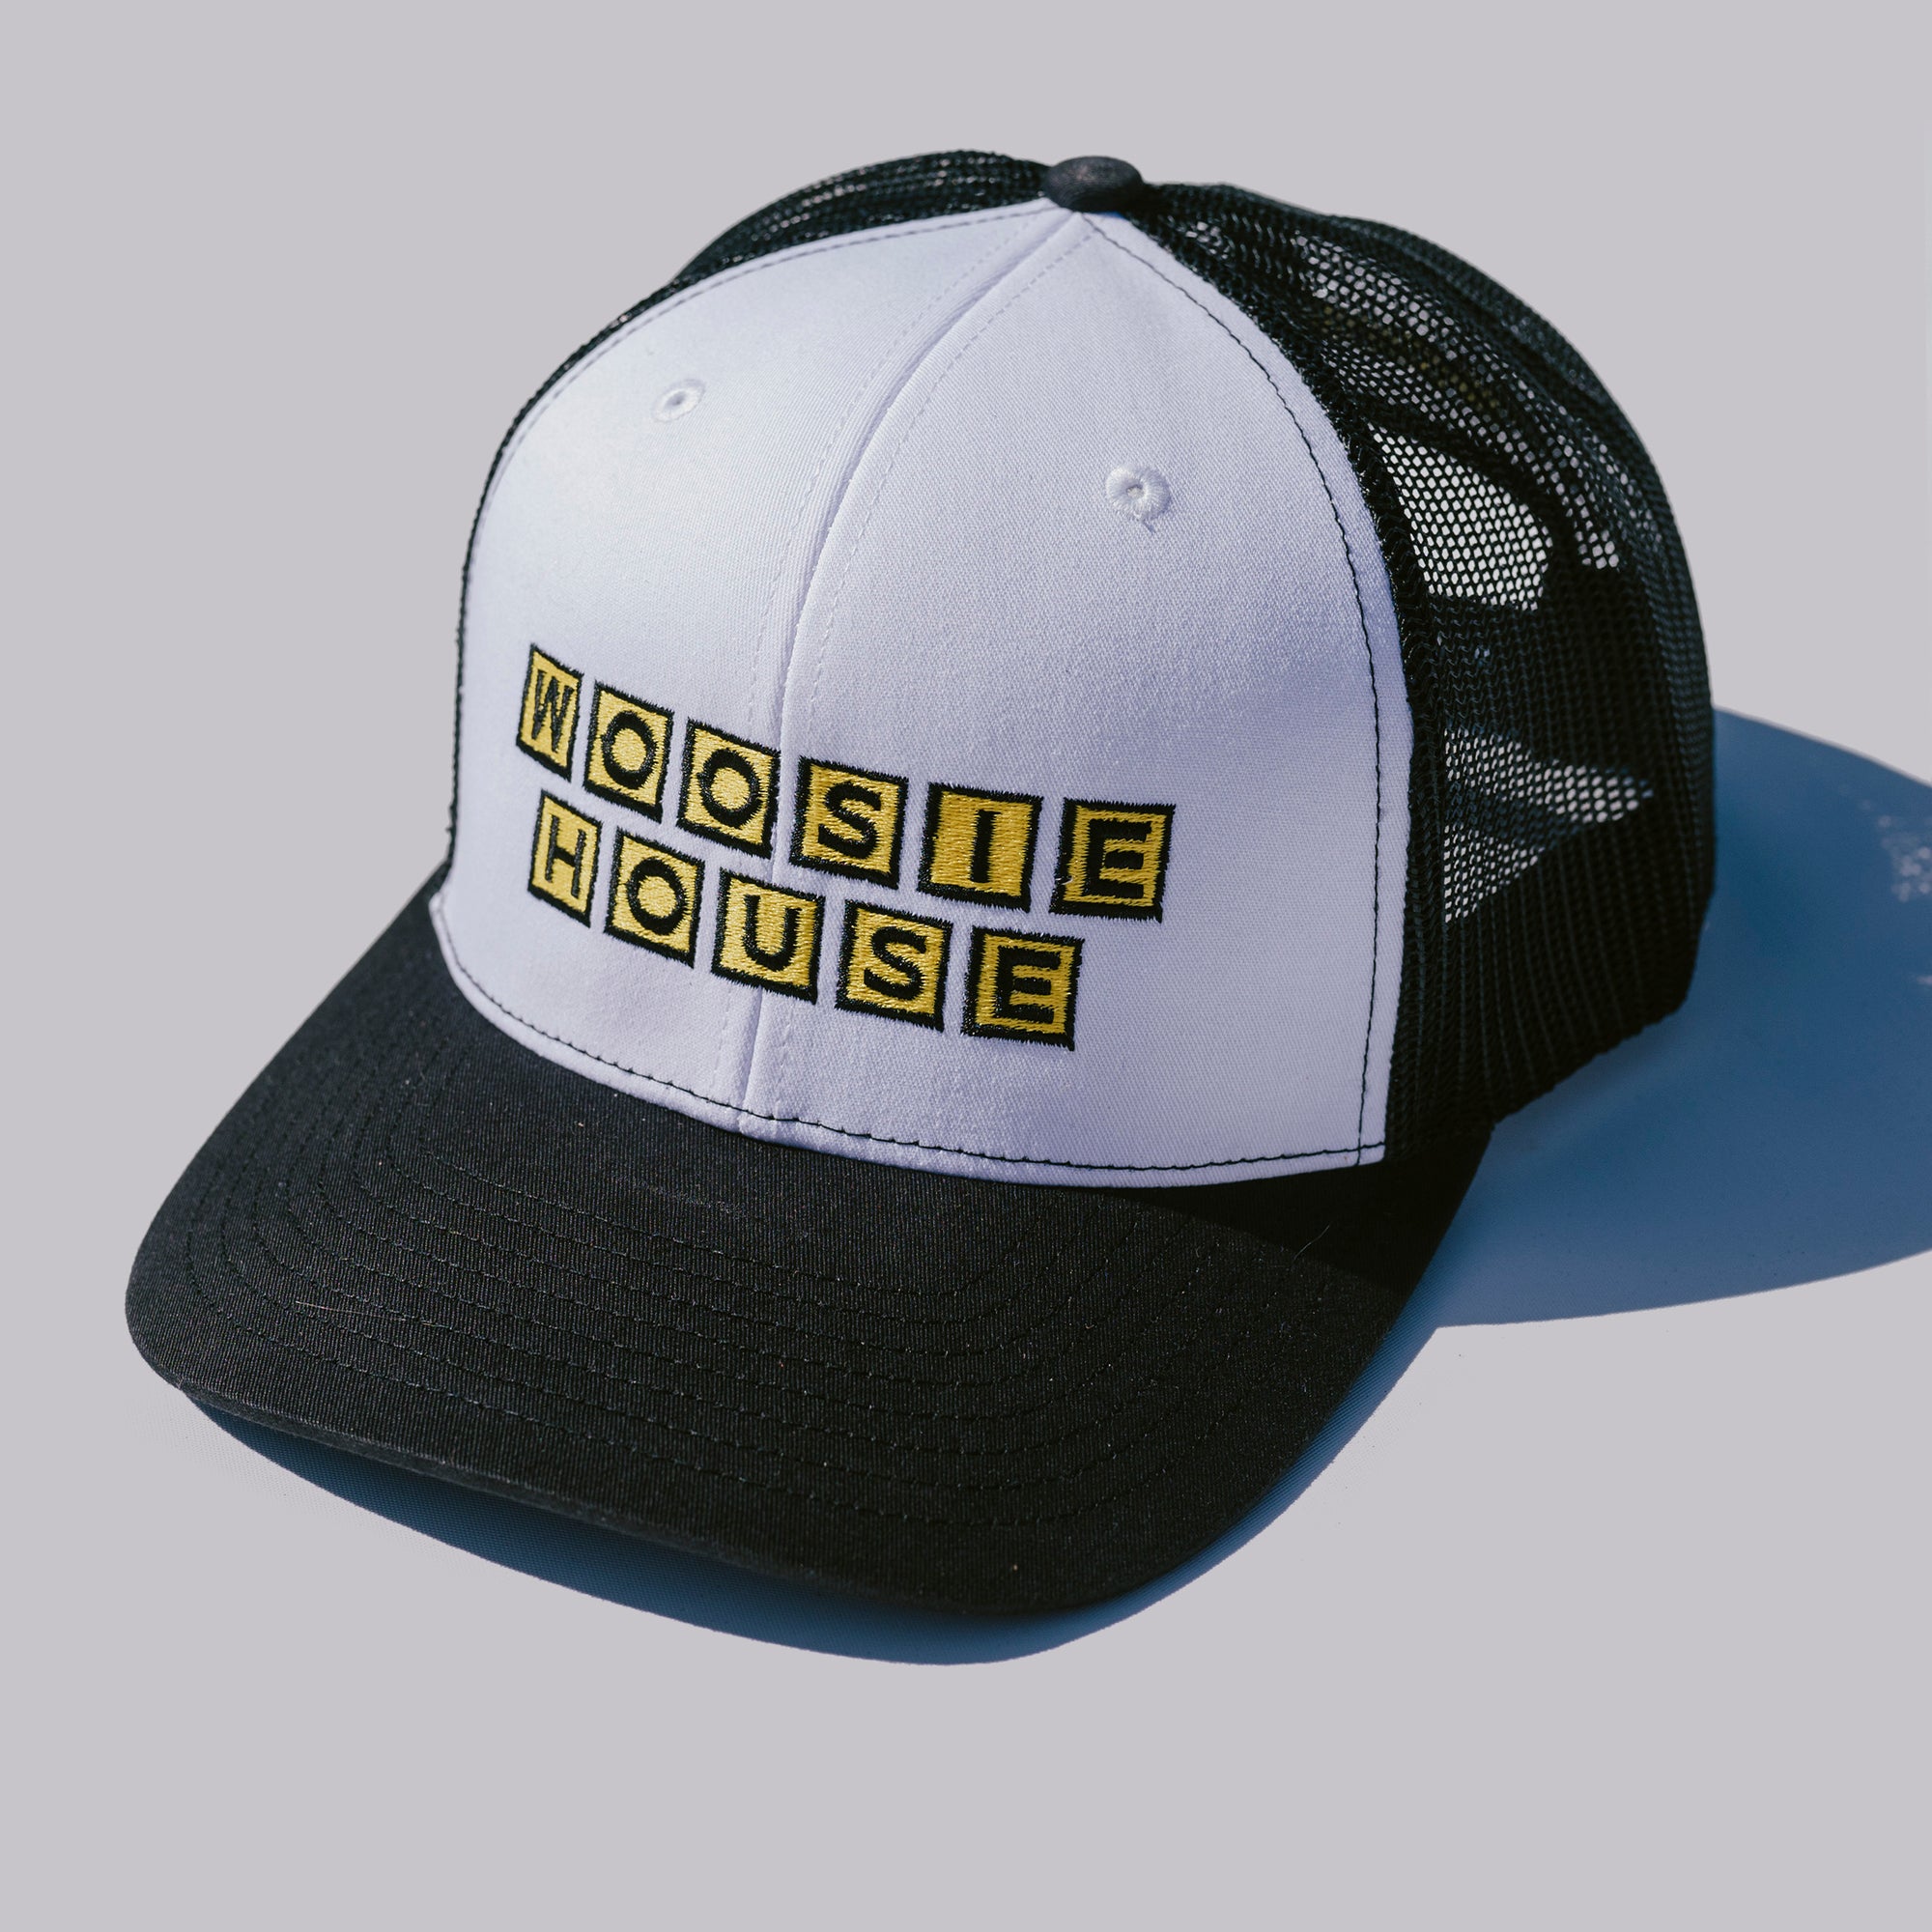 The Shotgun Start 5th Anniversary Woosie House Trucker Hat - White/Black